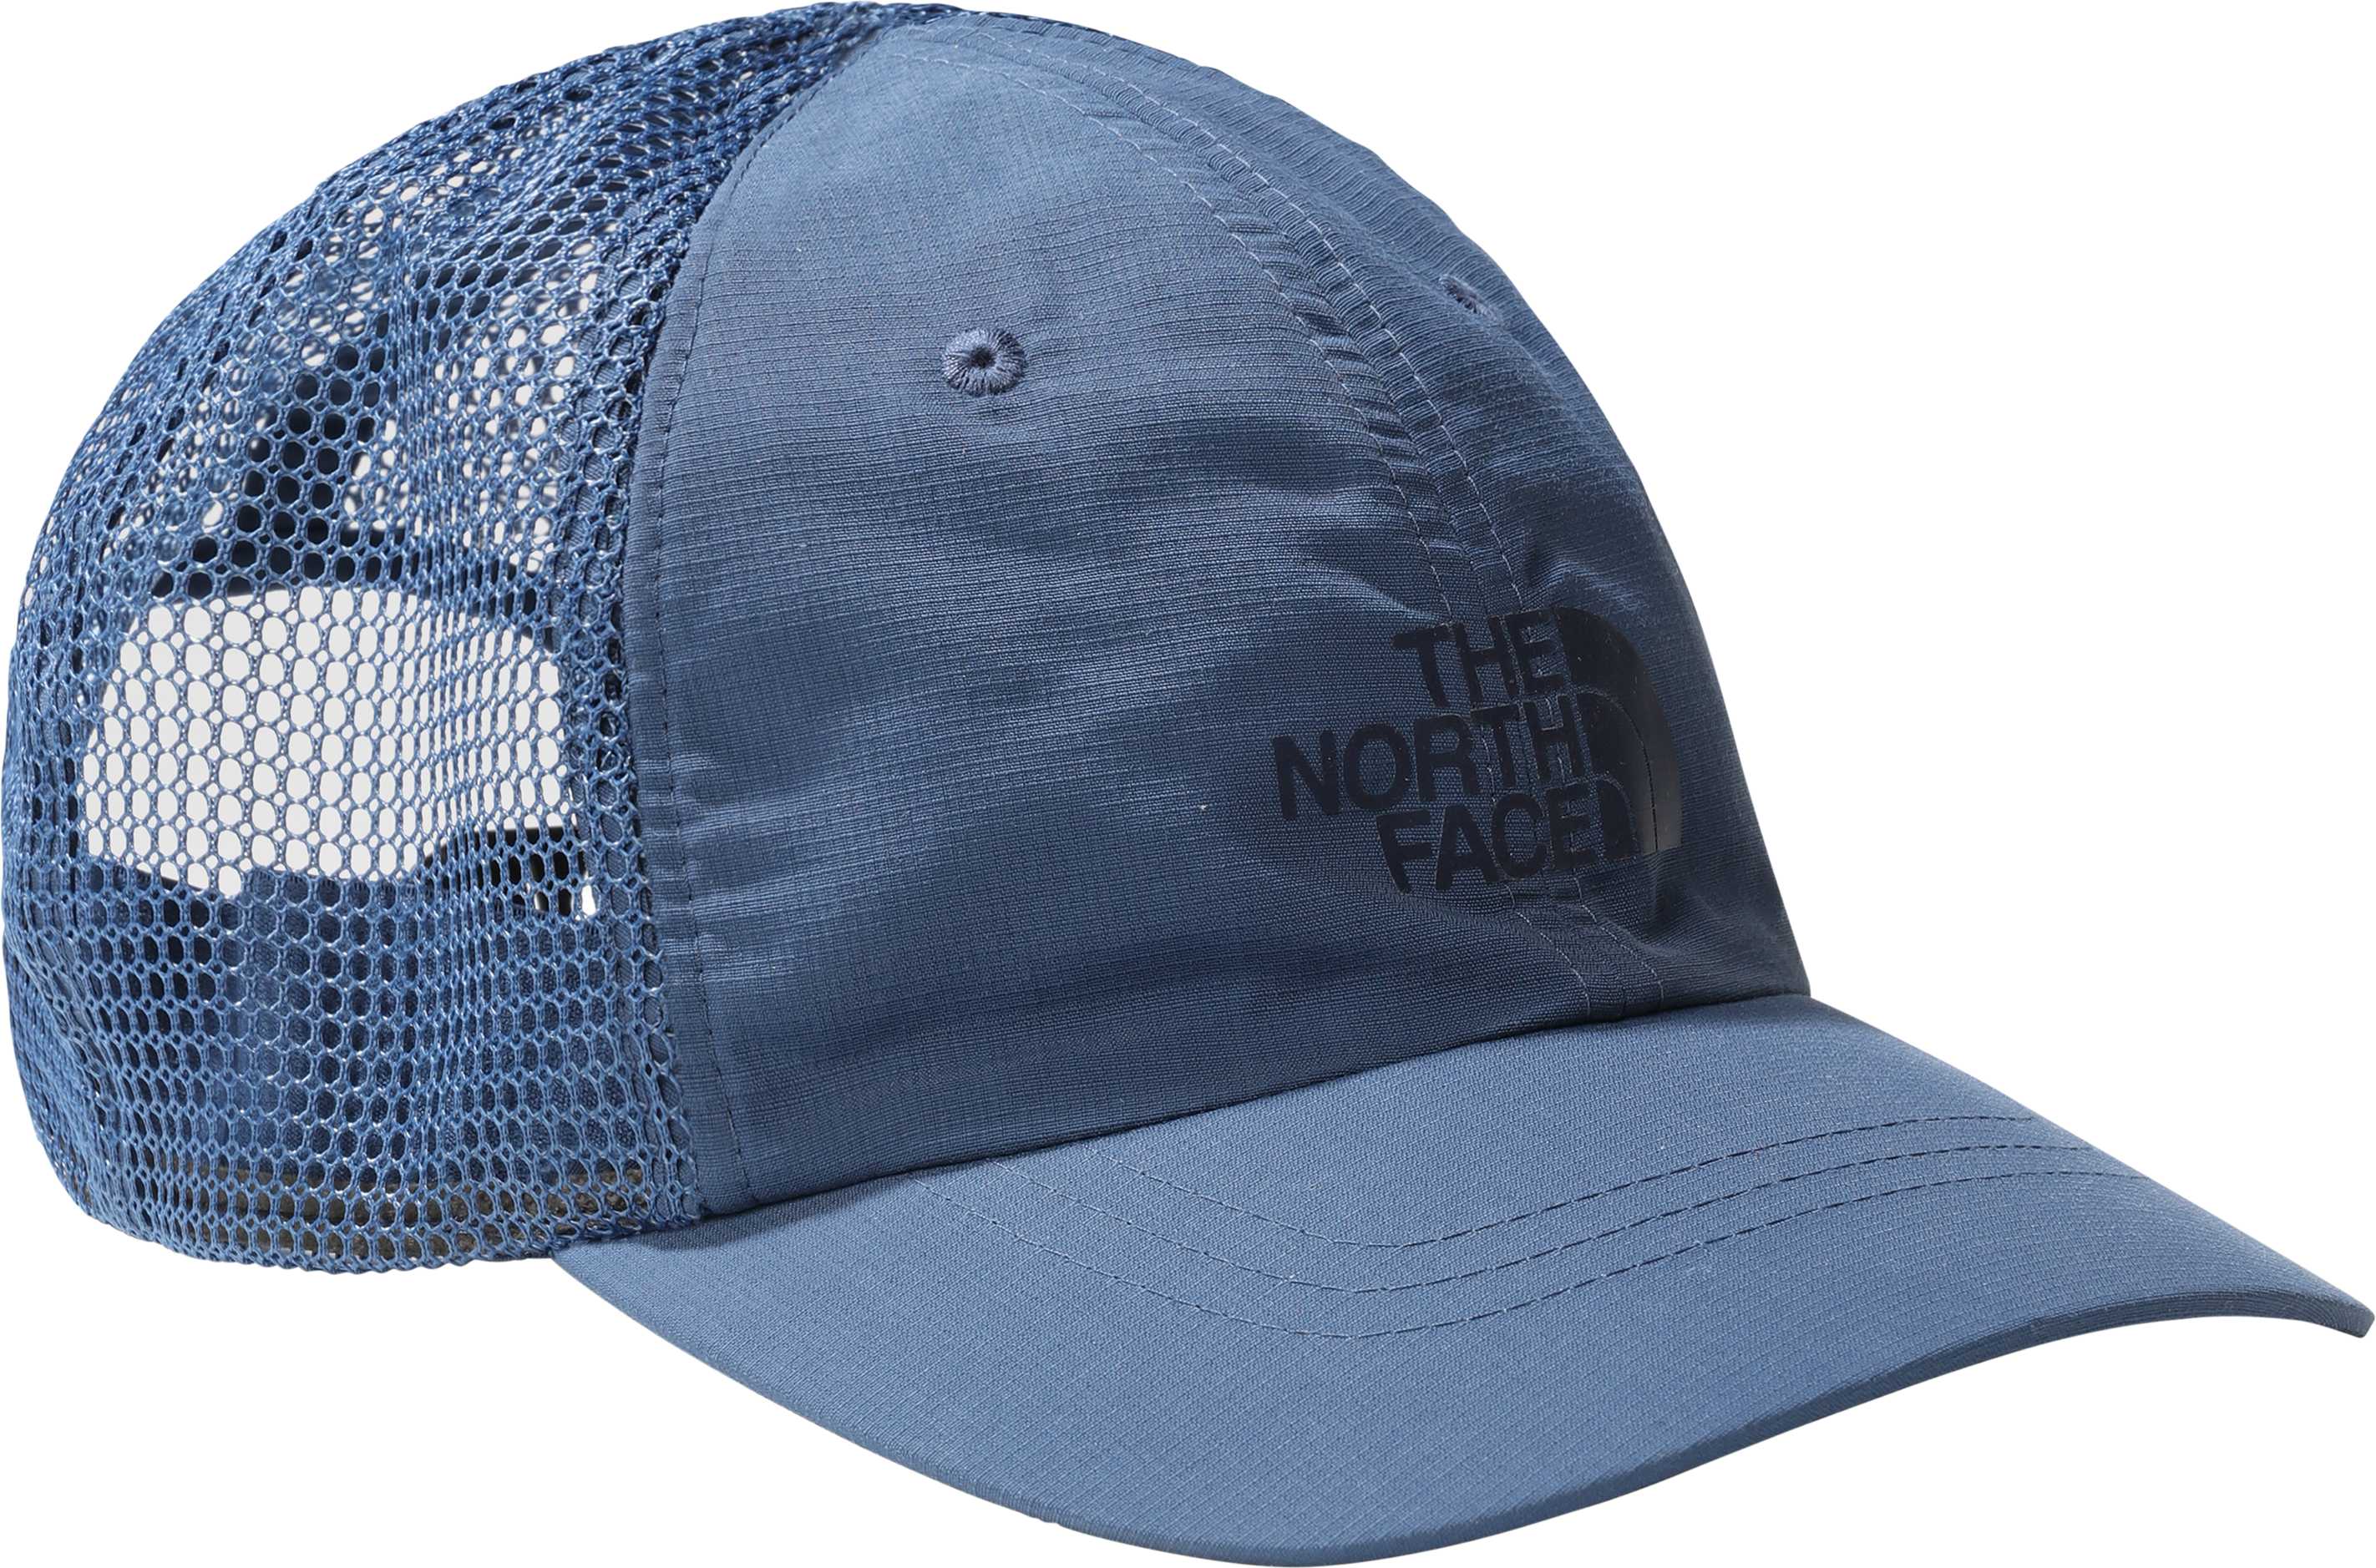 The North Face Horizon Trucker Cap Shady Blue